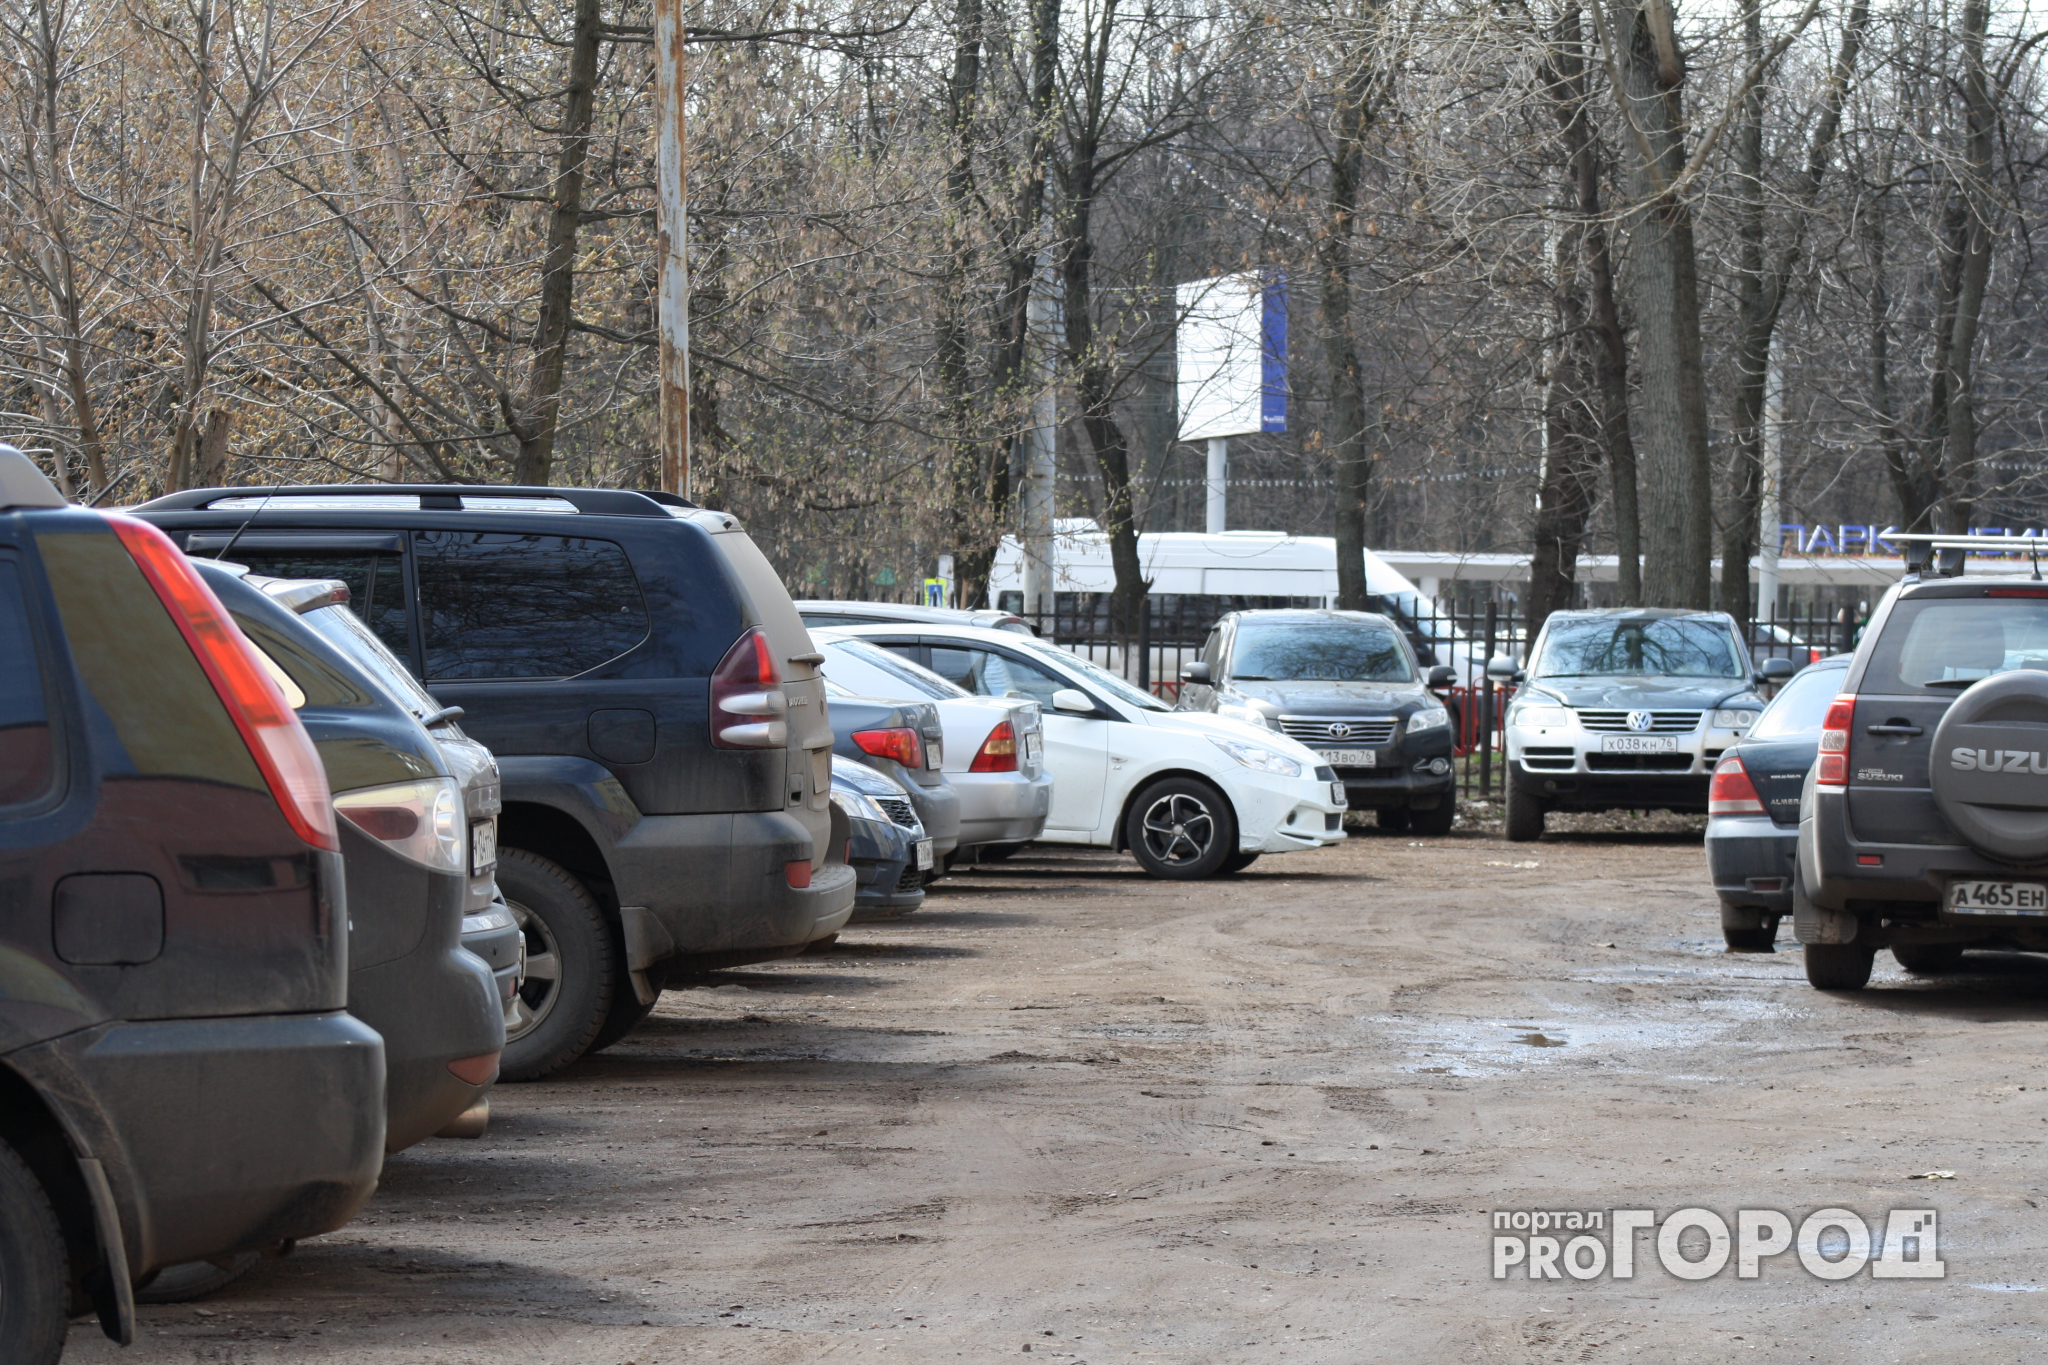 Около двух нижегородских торговых центров запретили ночную стоянку автомобилей